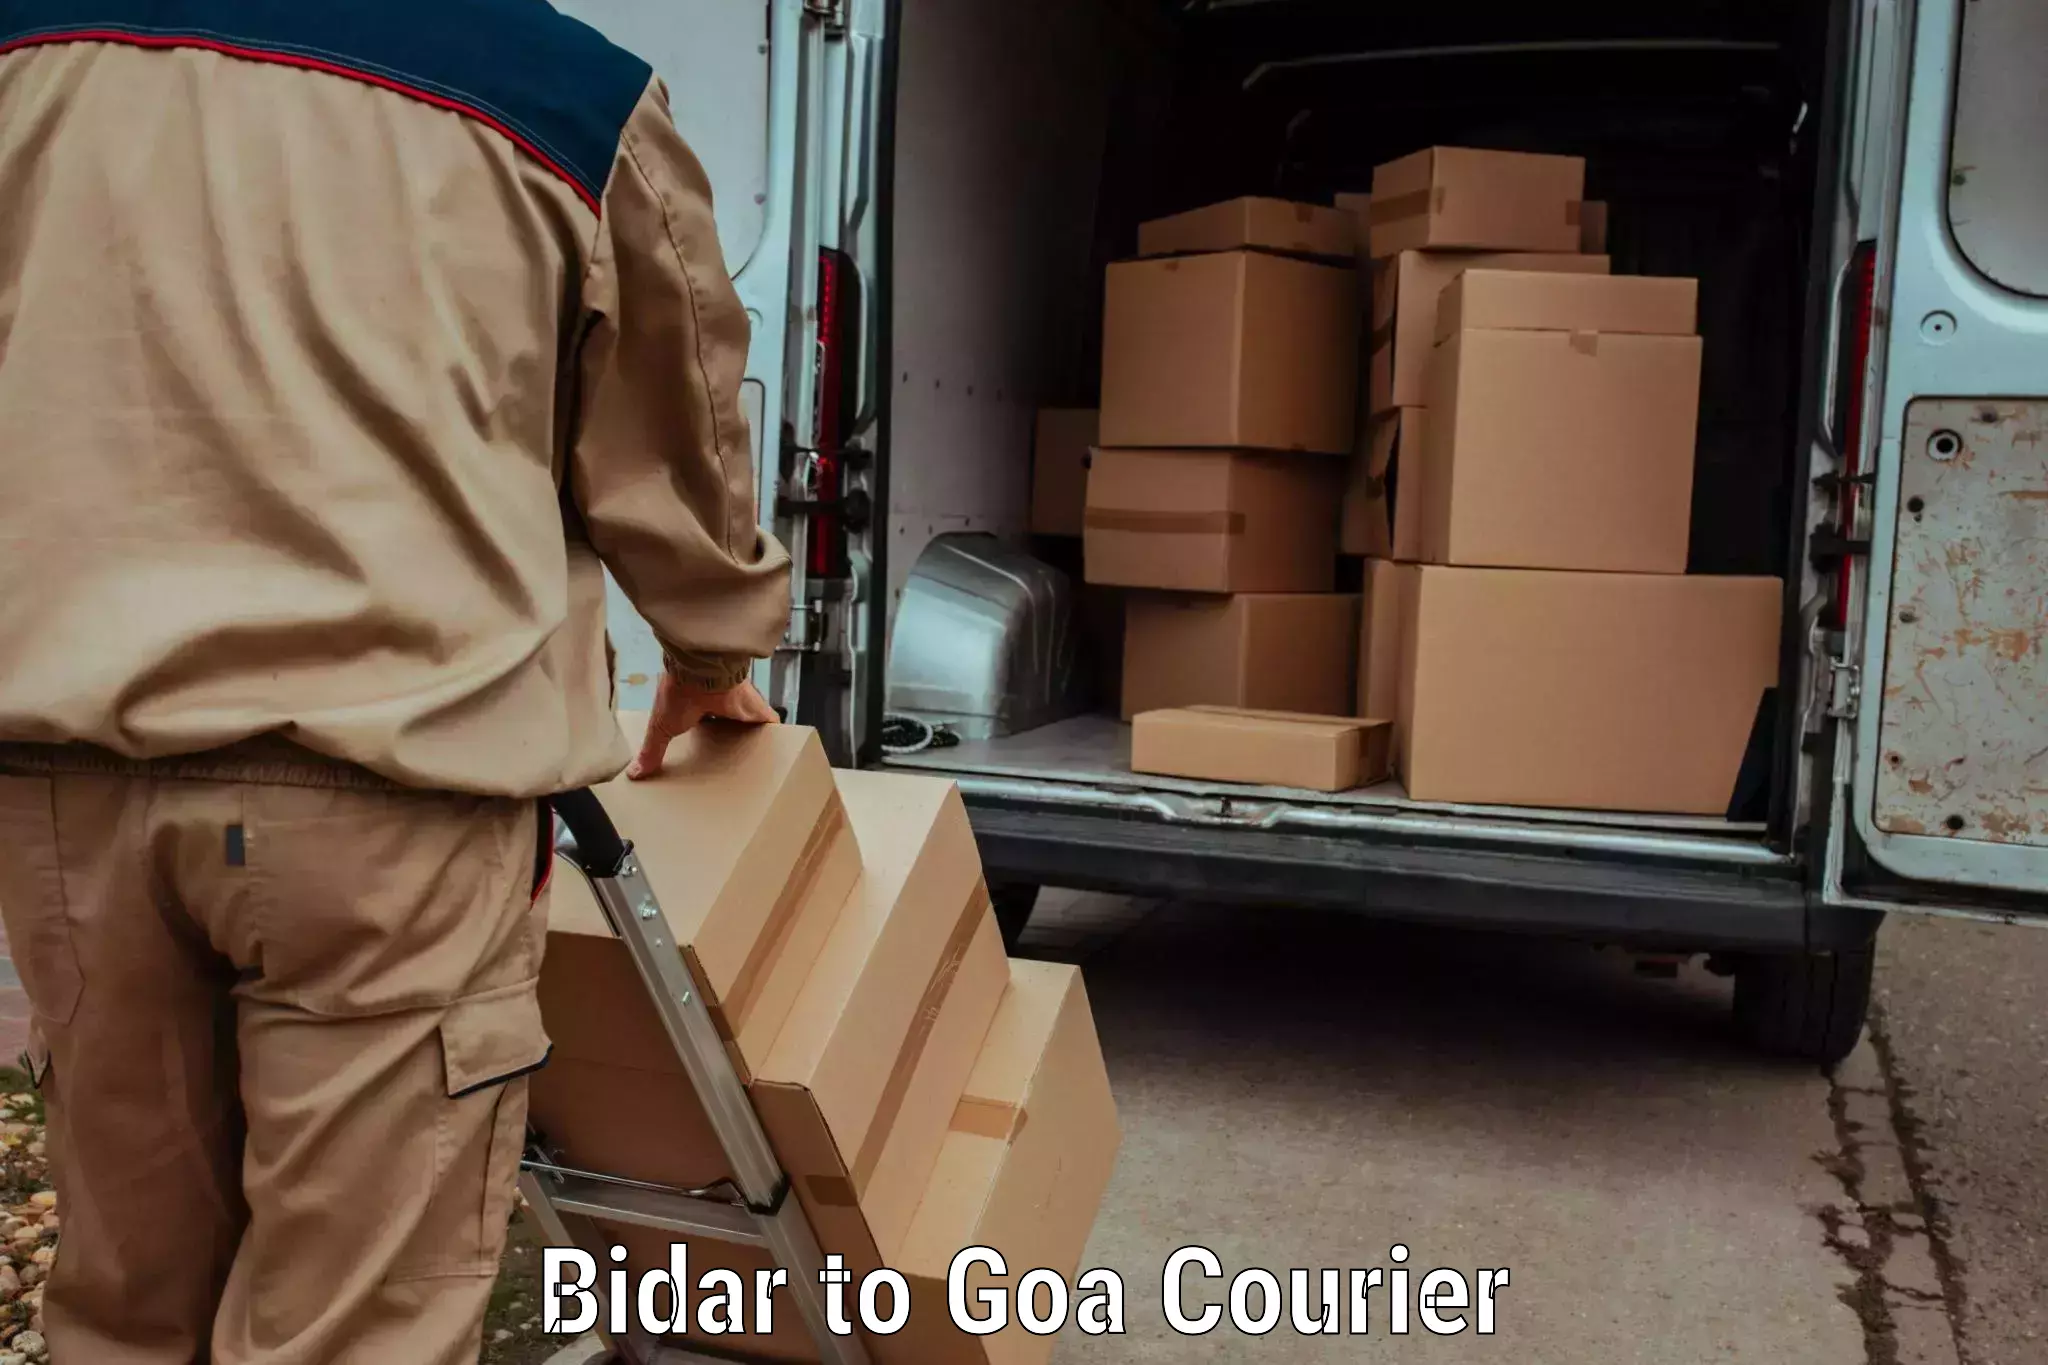 Flexible delivery schedules Bidar to Vasco da Gama